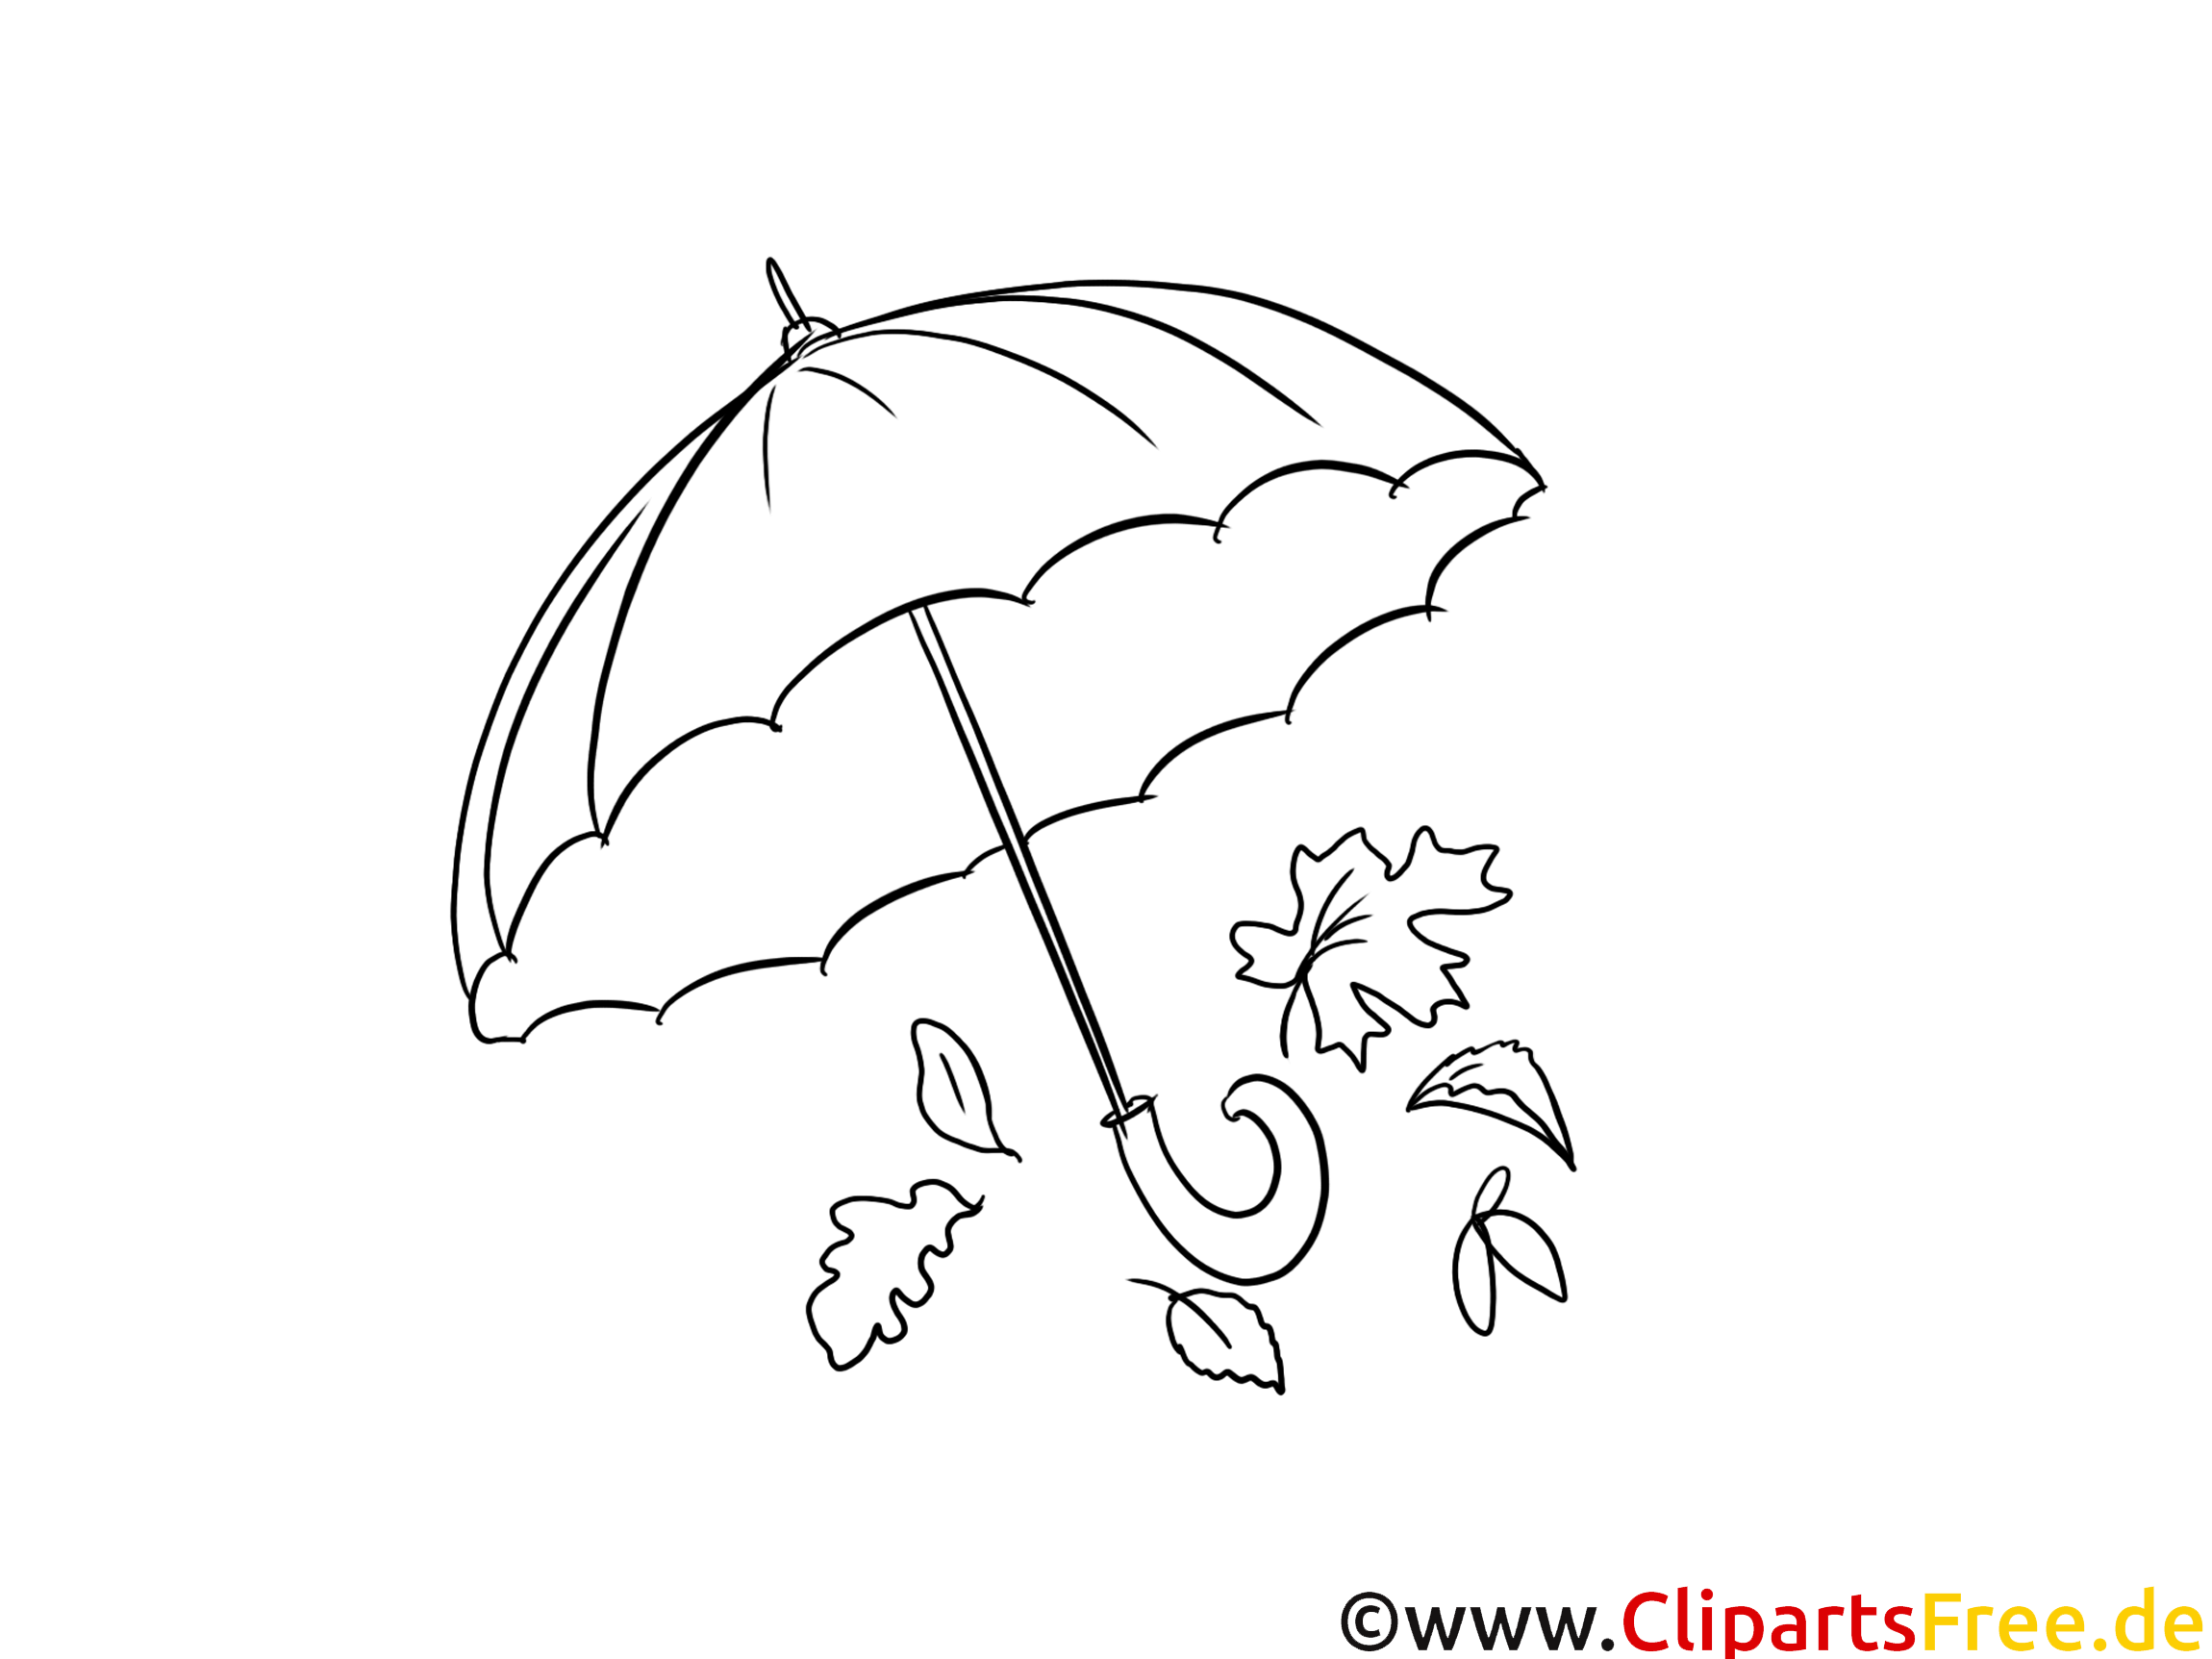 Parapluie dessins gratuits – Automne à colorier